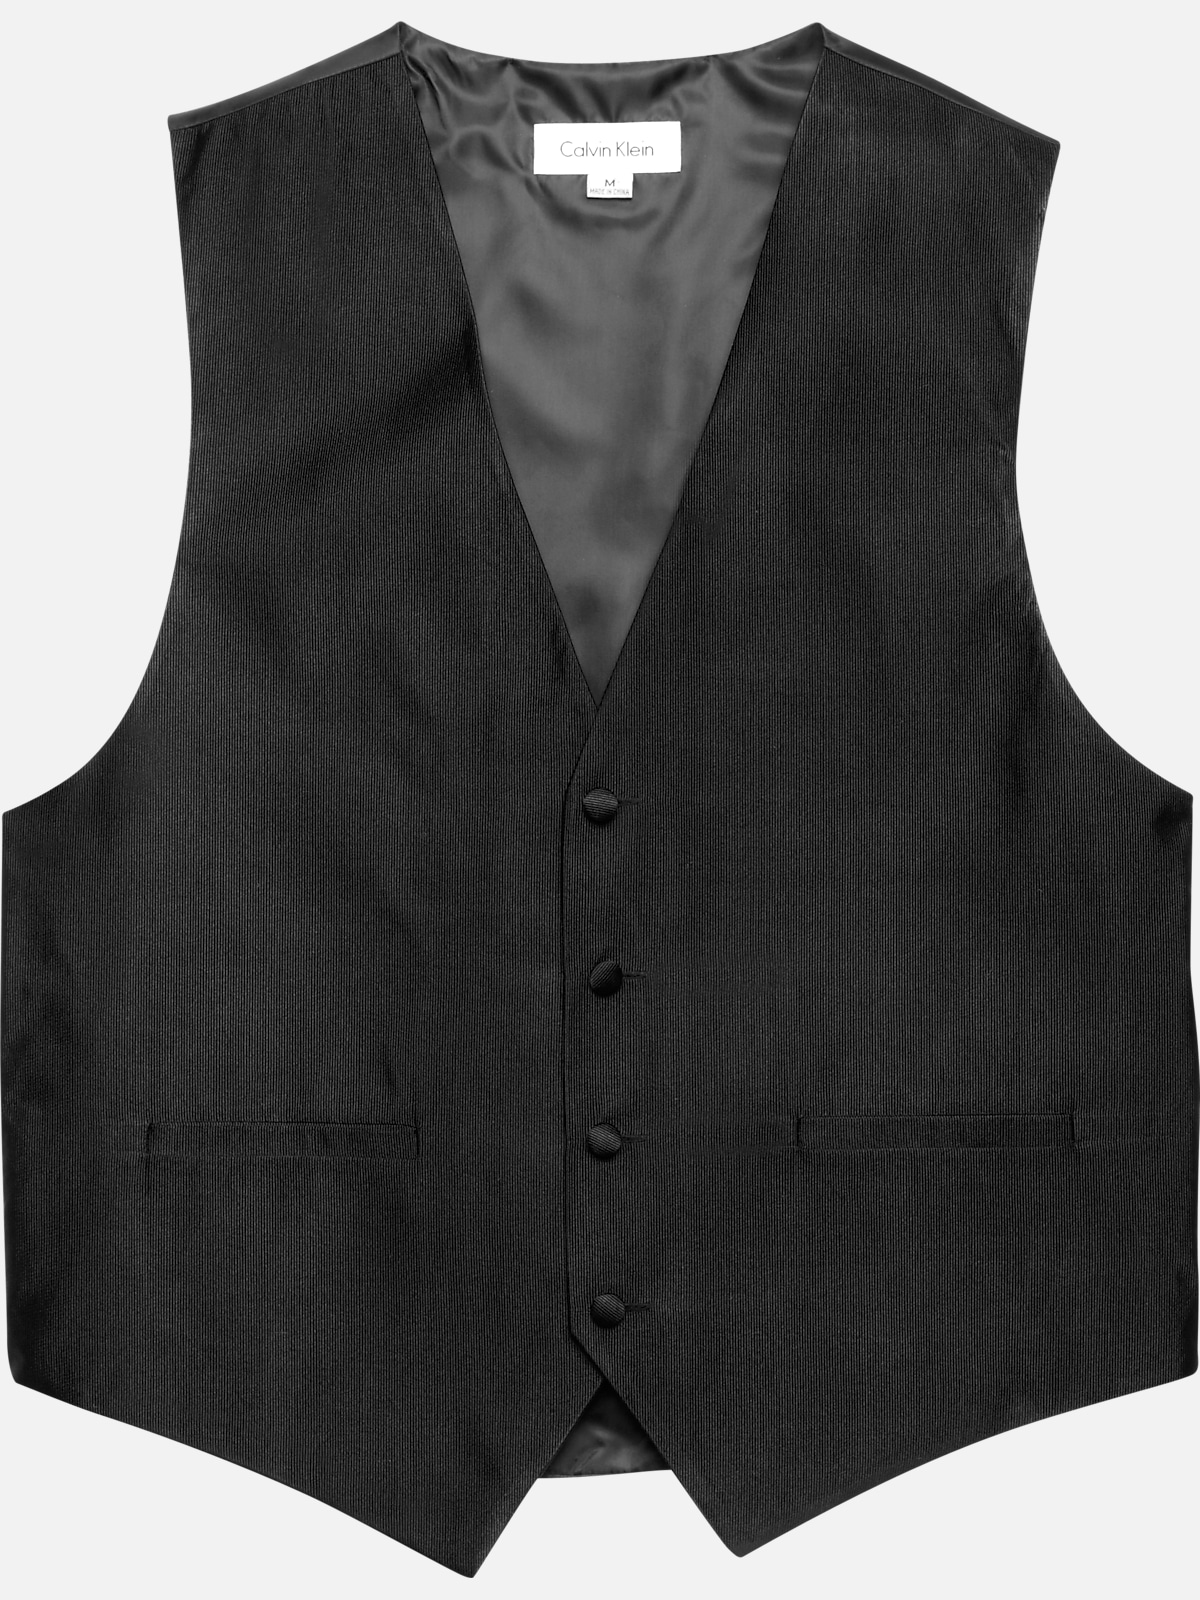 Black Suit Tie and Vest' Men's Tall T-Shirt